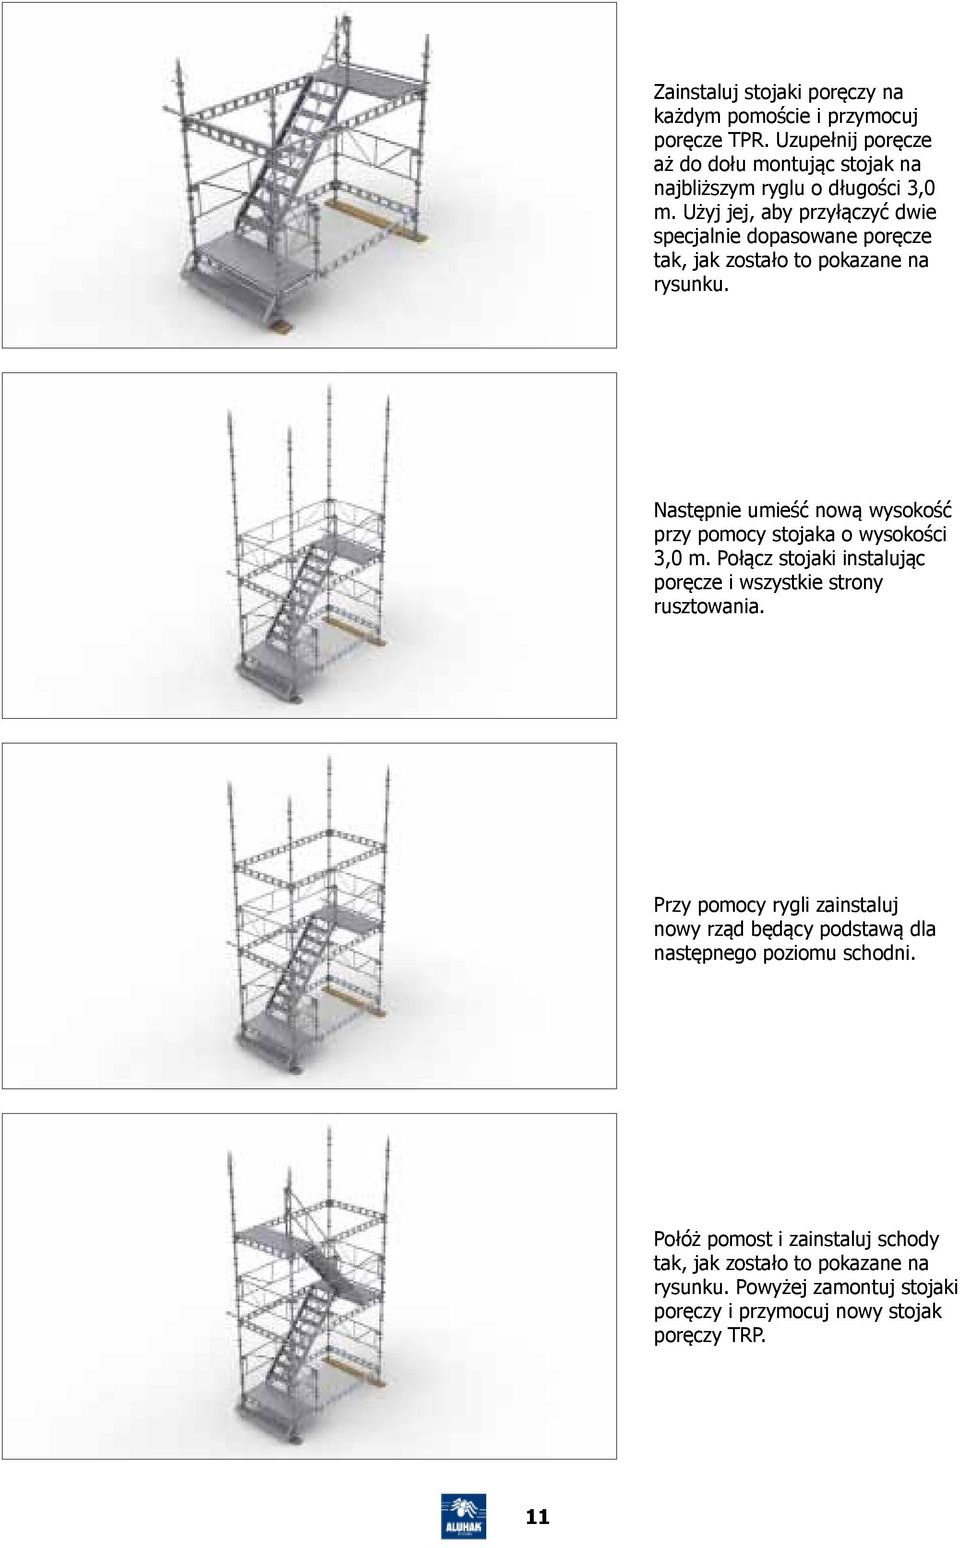 Następnie umieść nową wysokość przy pomocy stojaka o wysokości 3,0 m. Połącz stojaki instalując poręcze i wszystkie strony rusztowania.